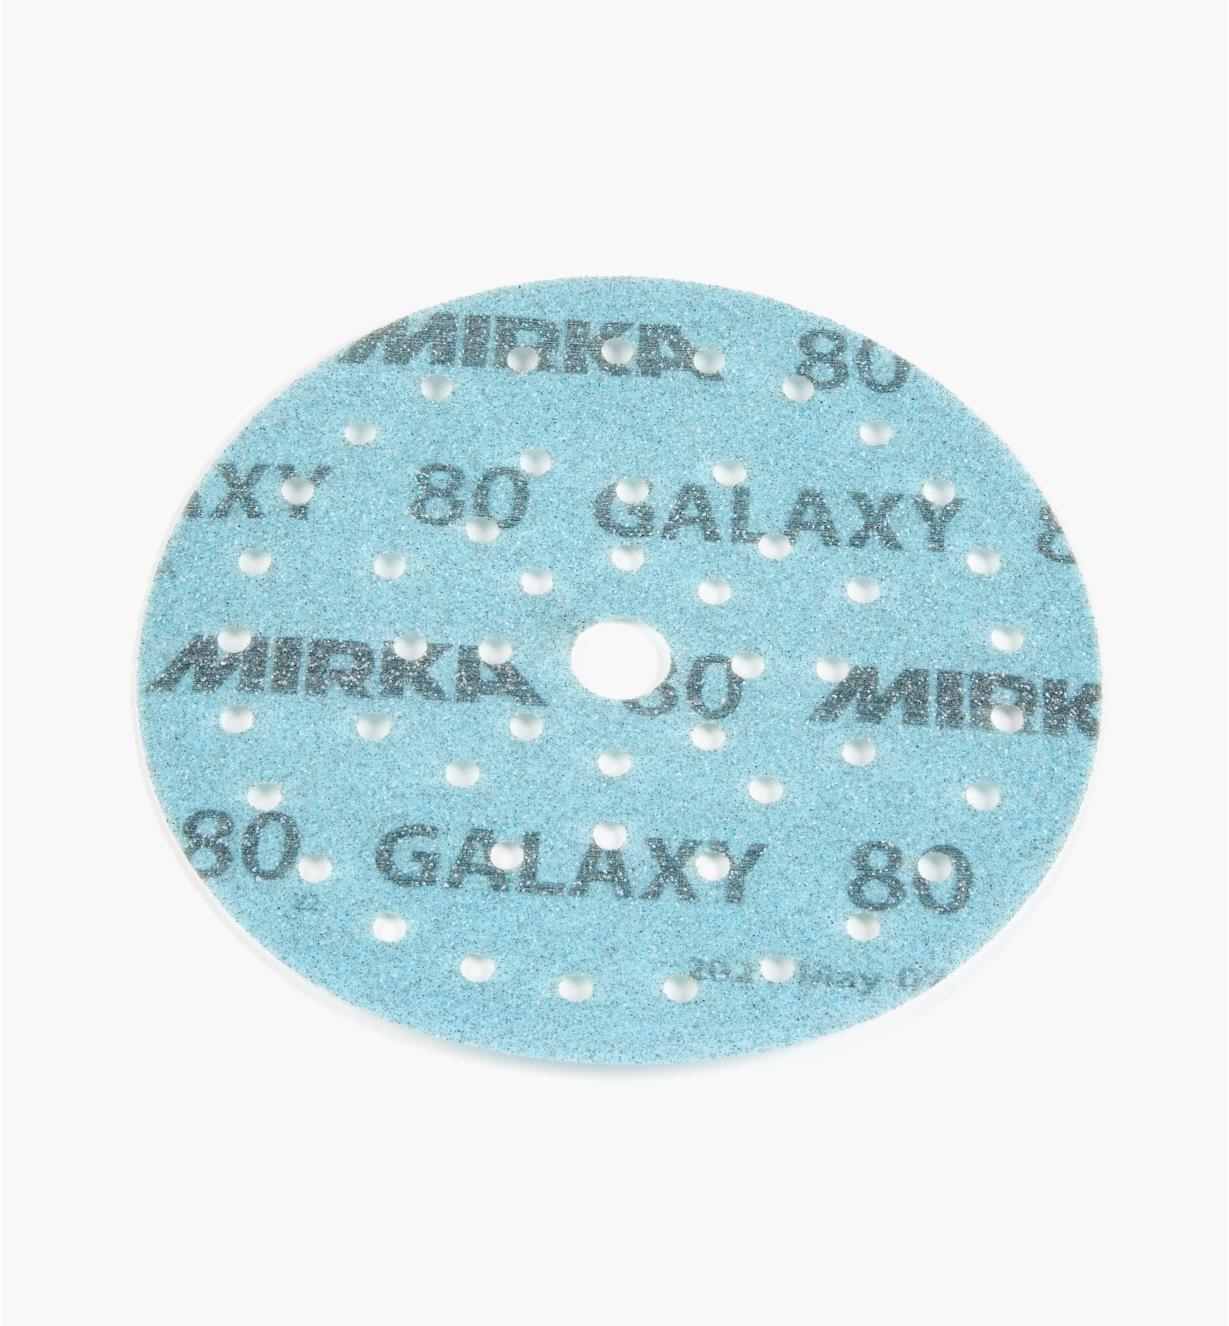 08K2142 - Disque abrasif autoagrippant Galaxy Multifit, 6 po, grain 80, l'unité